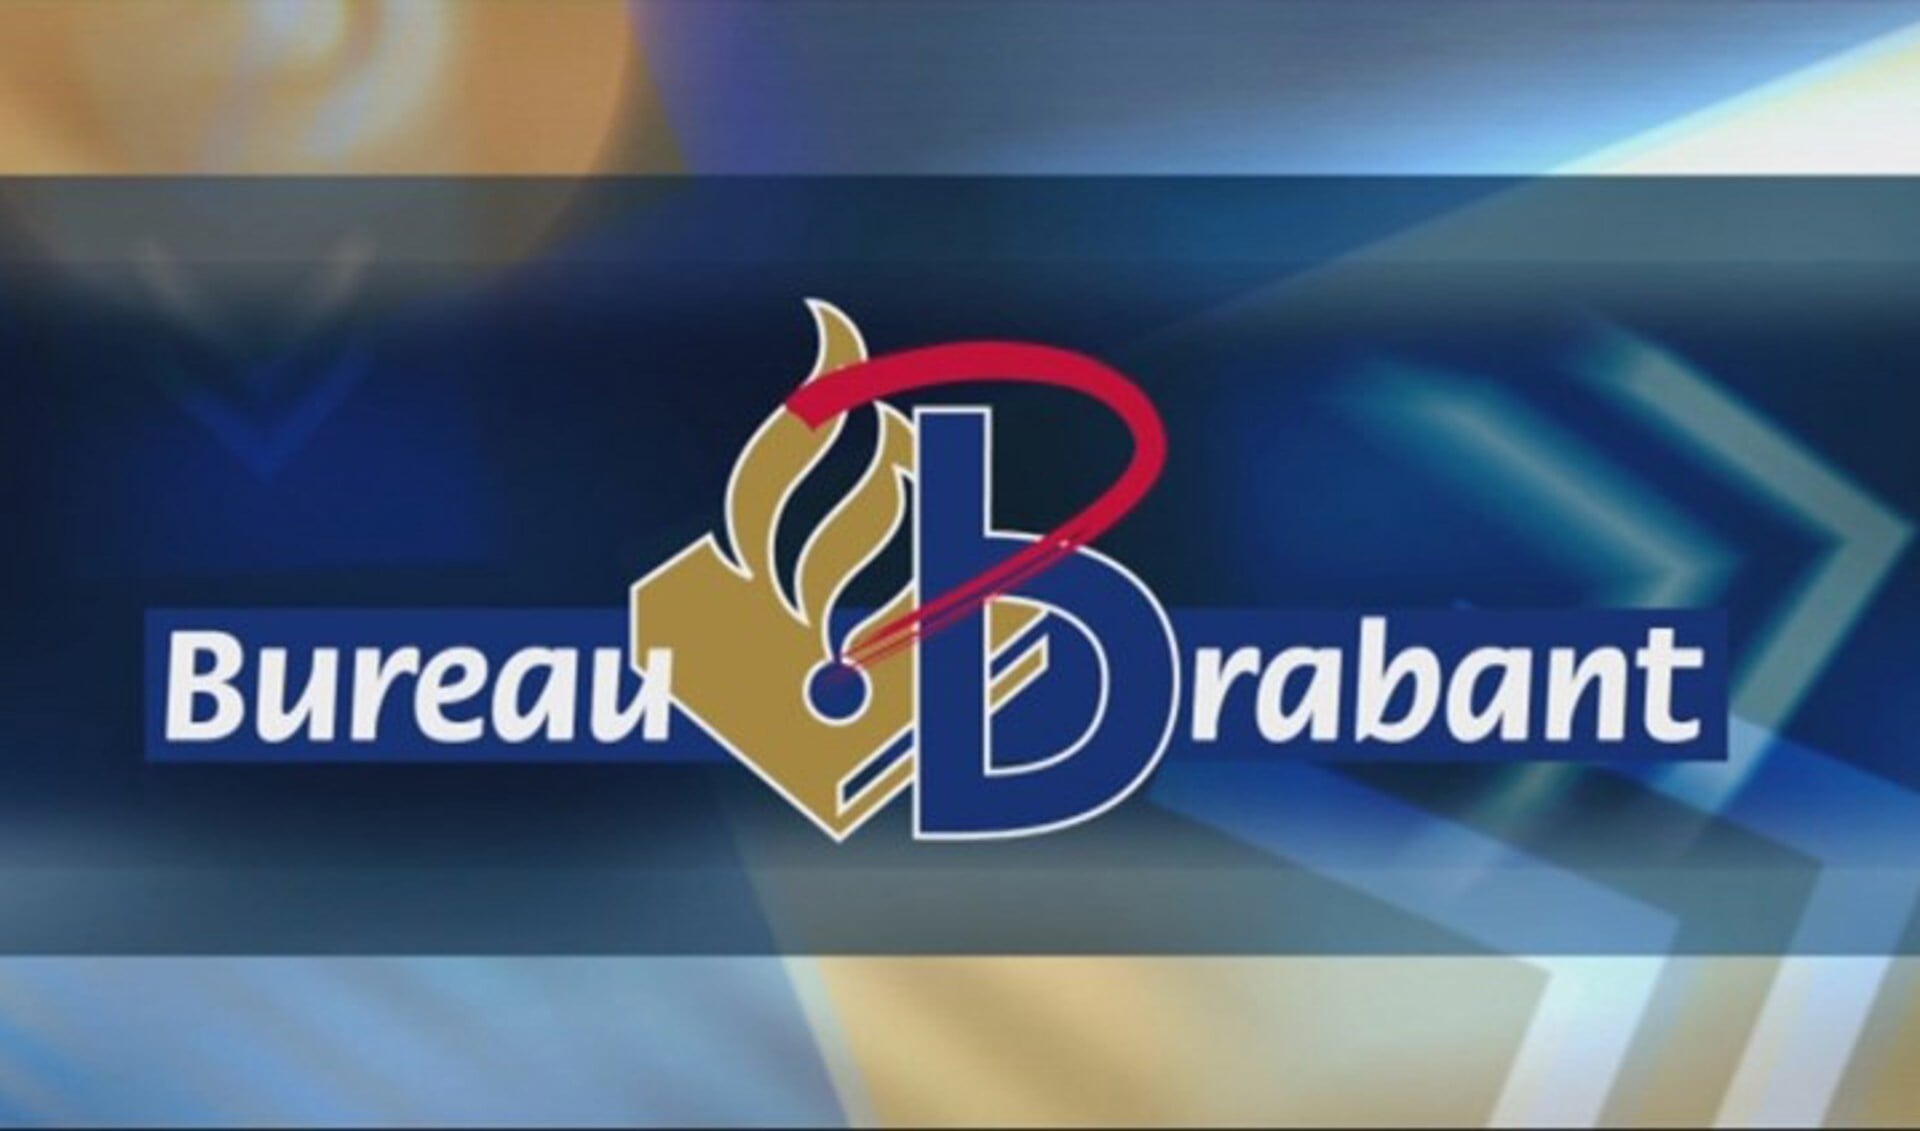 Beeld Omroep Brabant/Bureau Brabant